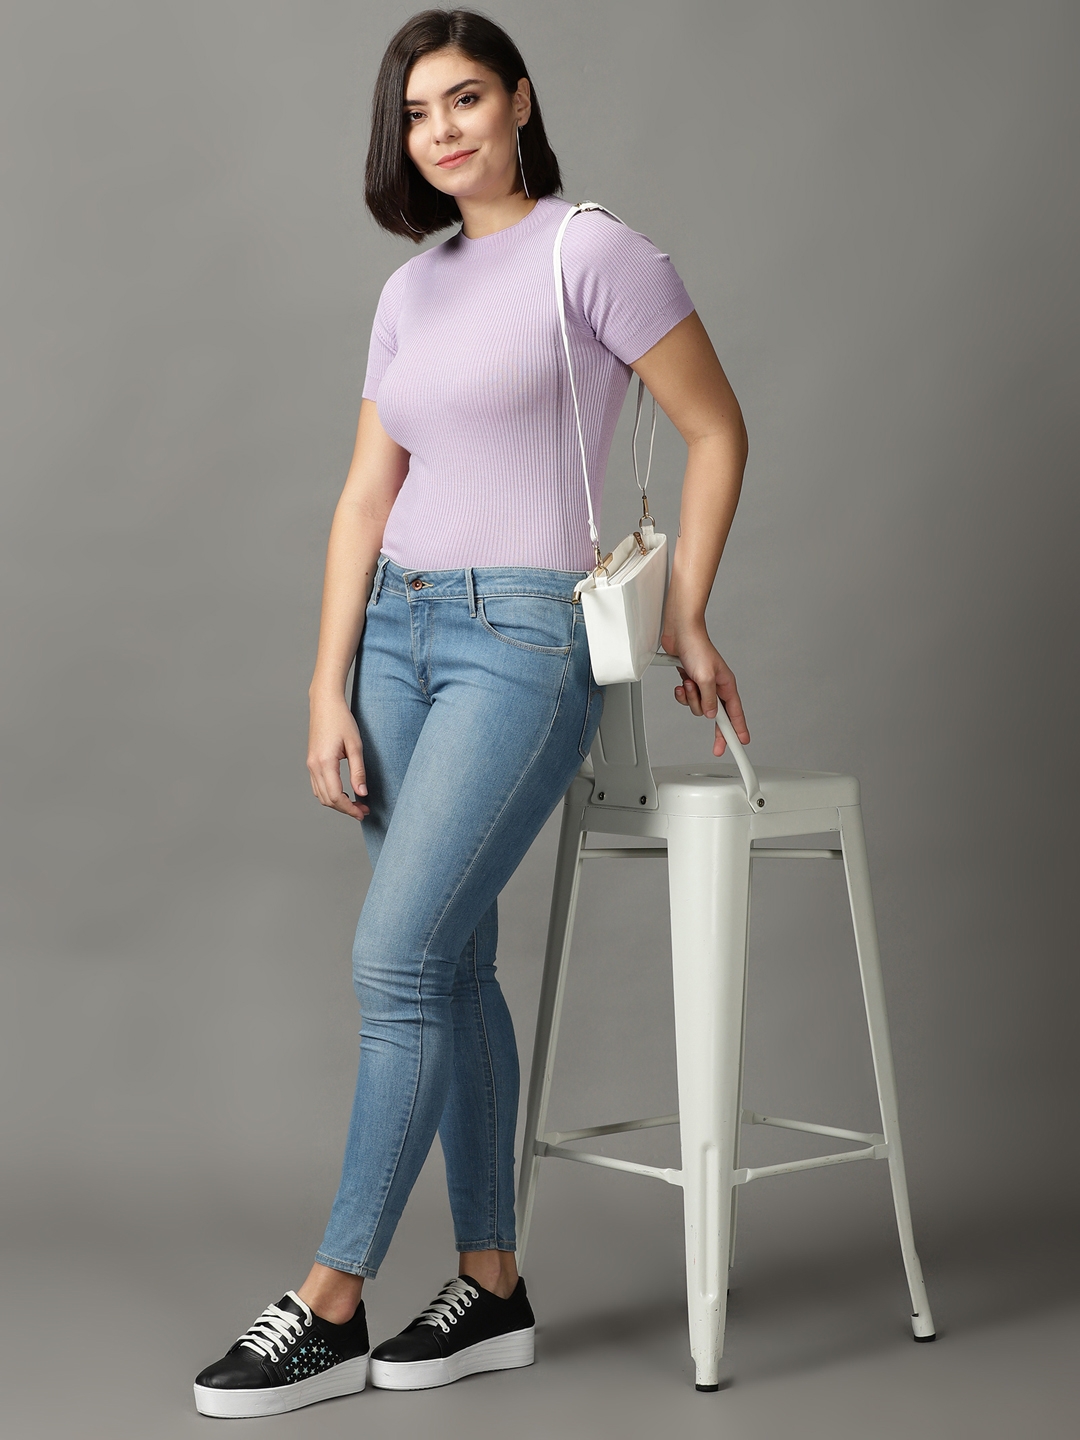 Women's Purple Cotton Blend Solid Tops